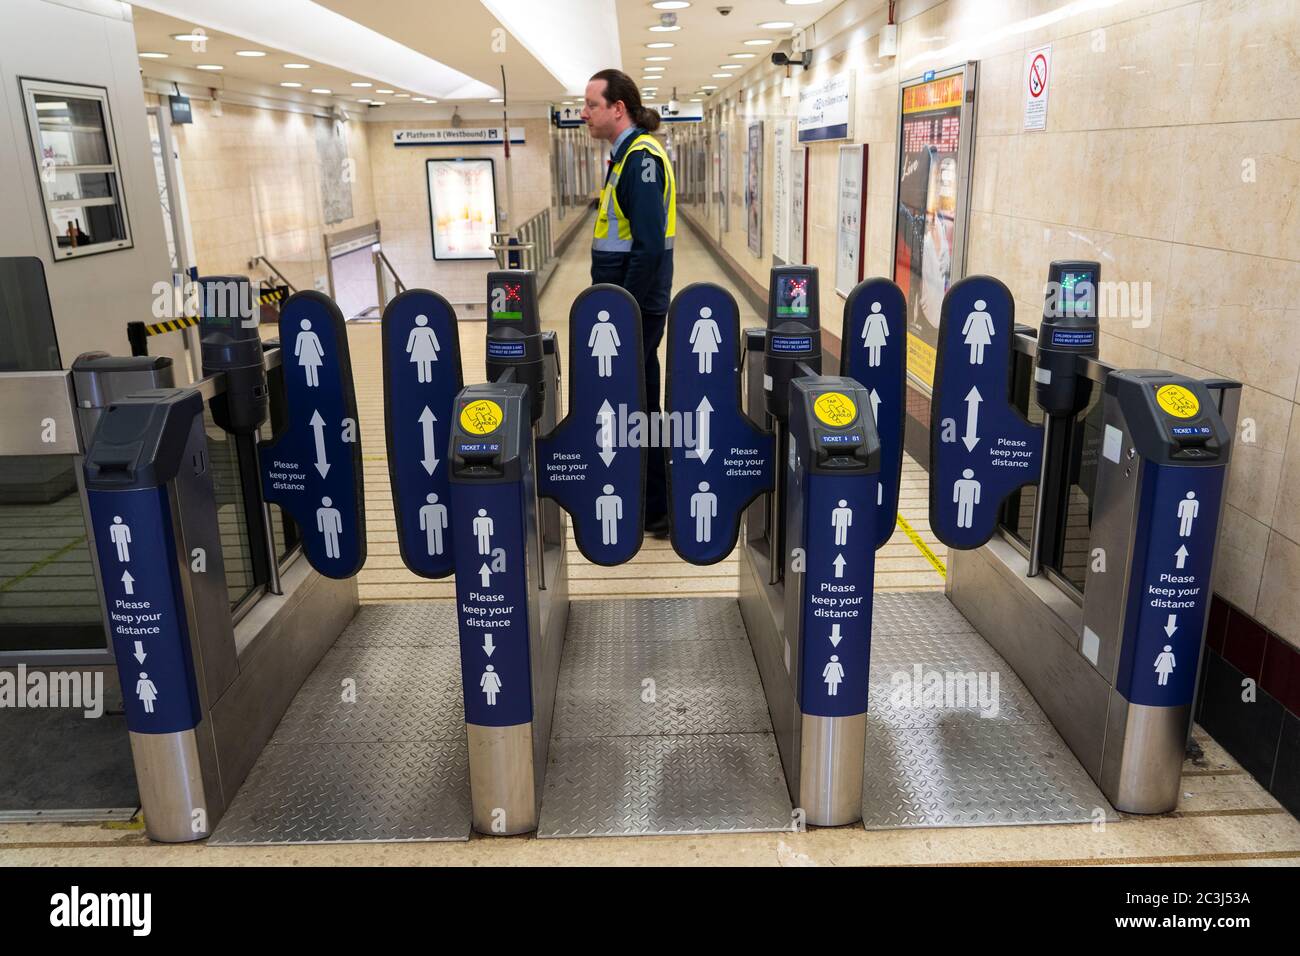 Glasgow, Écosse, Royaume-Uni. 20 juin 2020. Panneaux indiquant la distance sociale aux passagers sur les barrières d'entrée de la gare de Queen Street à Glasgow. Iain Masterton/Alay Live News Banque D'Images